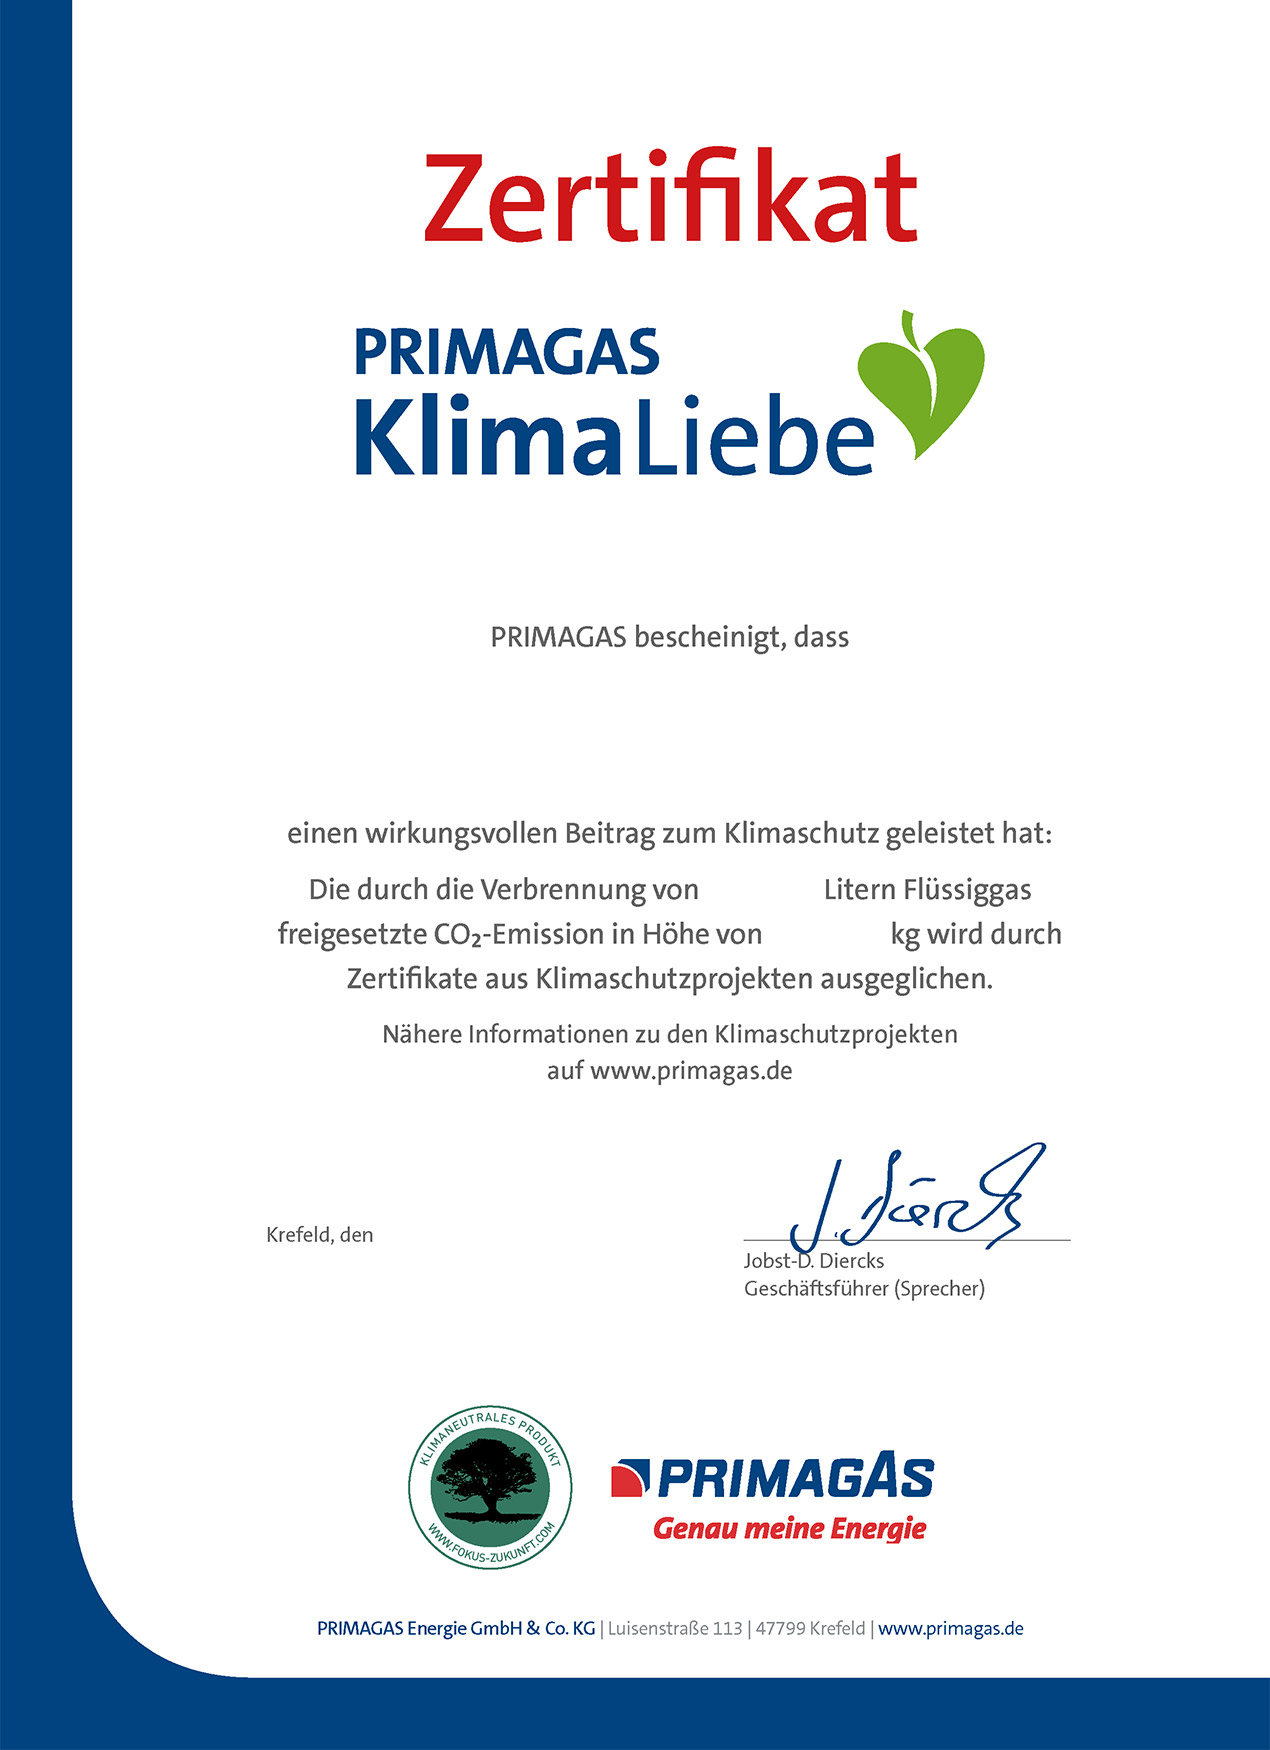 PRIMAGAS KlimaLiebe - Zertifikat Flüssiggas